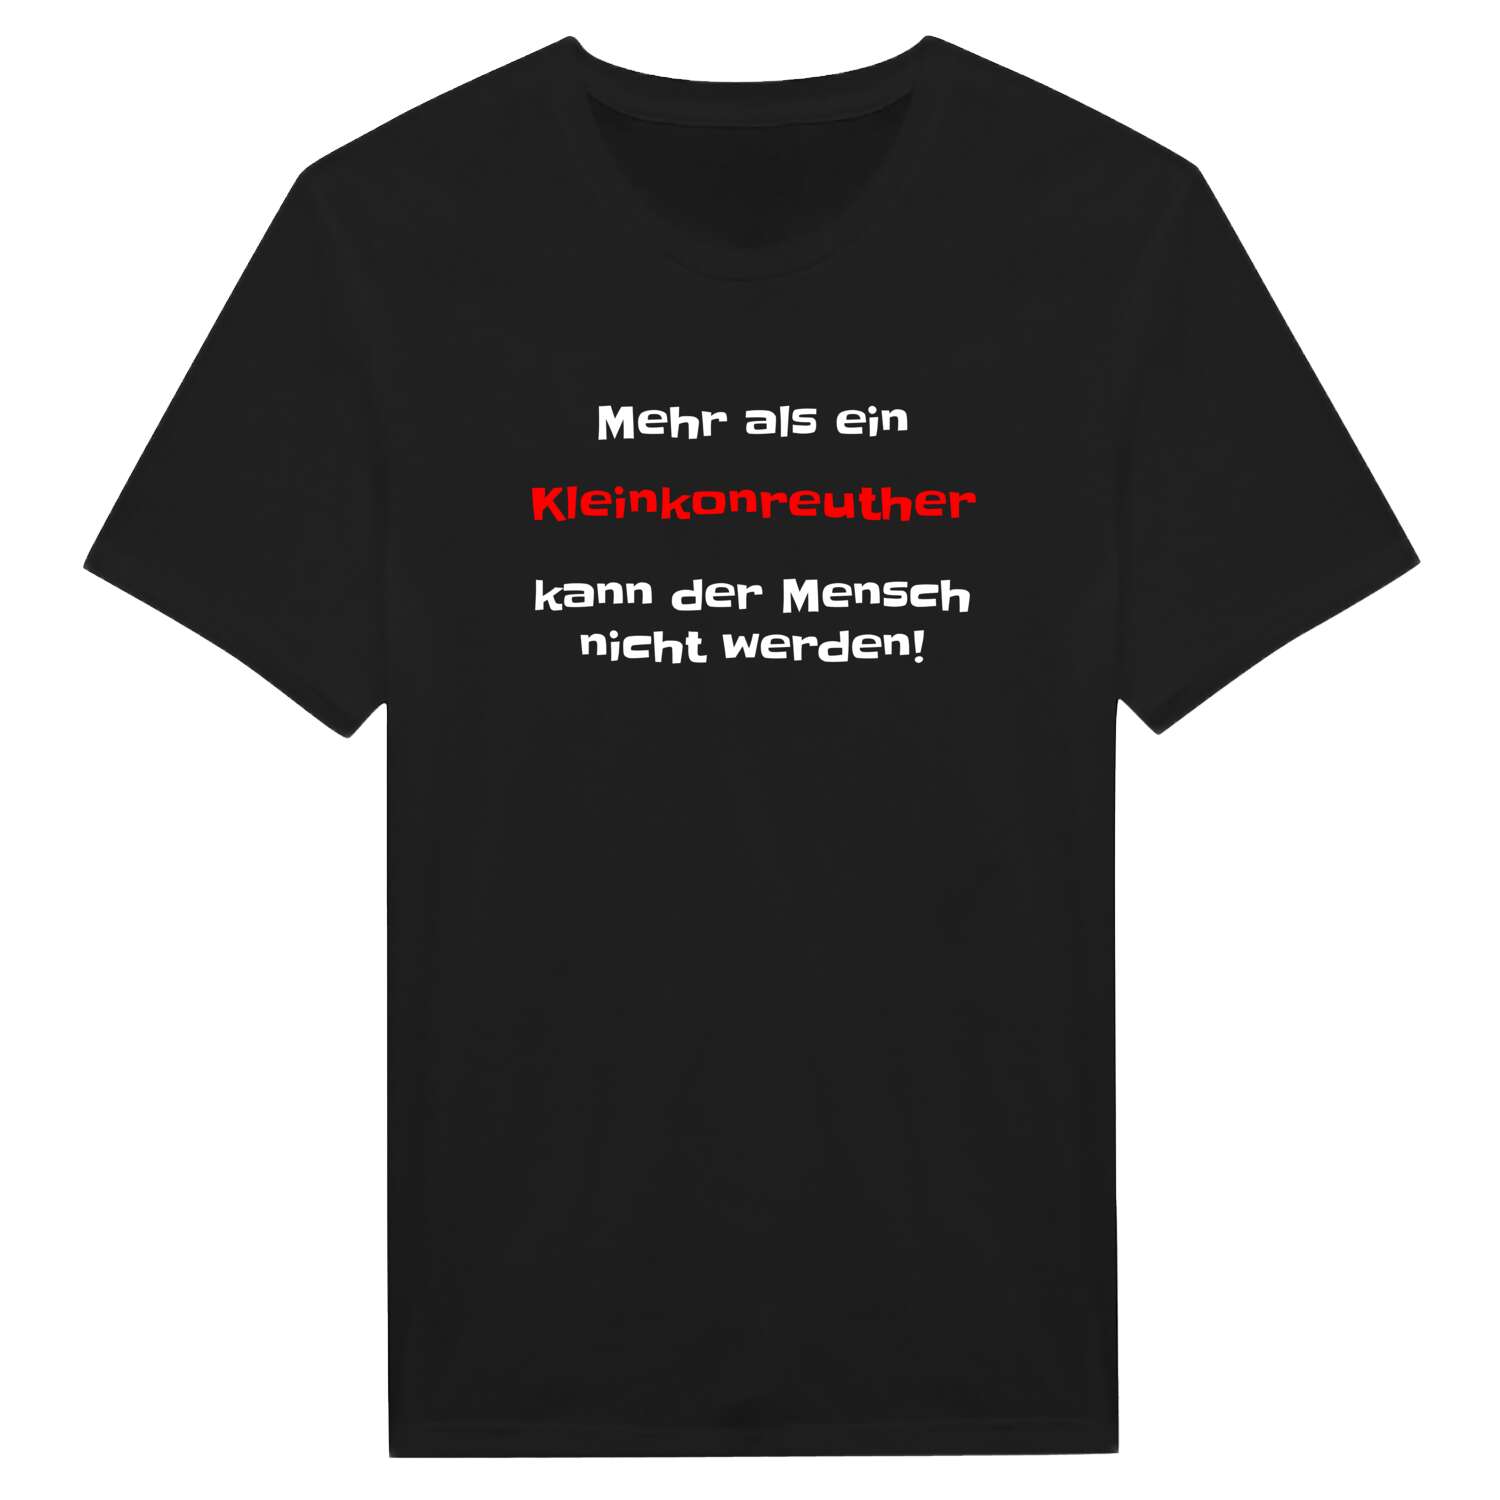 Kleinkonreuth T-Shirt »Mehr als ein«